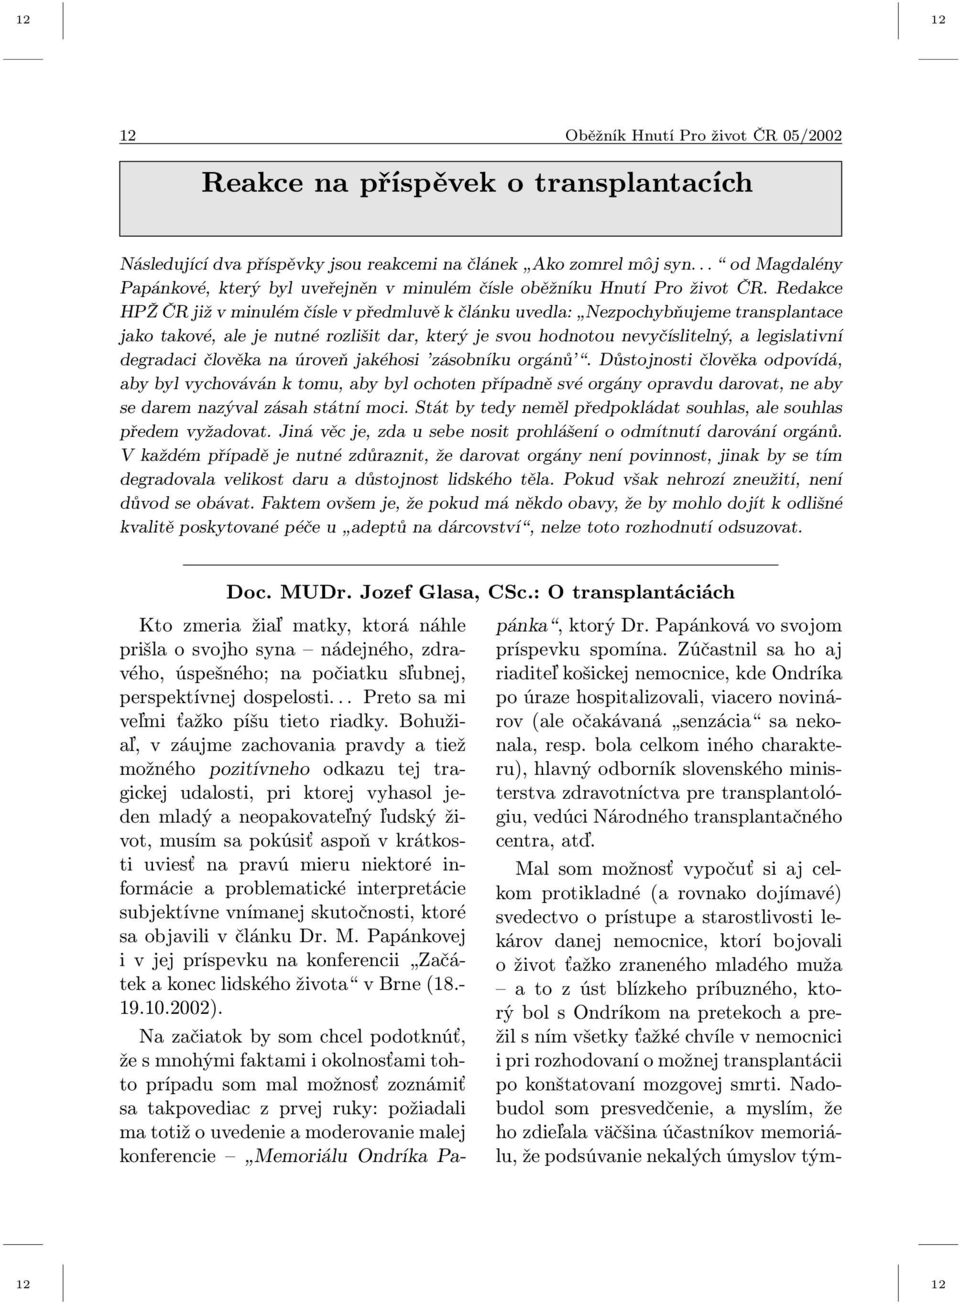 Redakce HPŽ ČR již v minulém čísle v předmluvě k článku uvedla: Nezpochybňujeme transplantace jako takové, ale je nutné rozlišit dar, který je svou hodnotou nevyčíslitelný, a legislativní degradaci